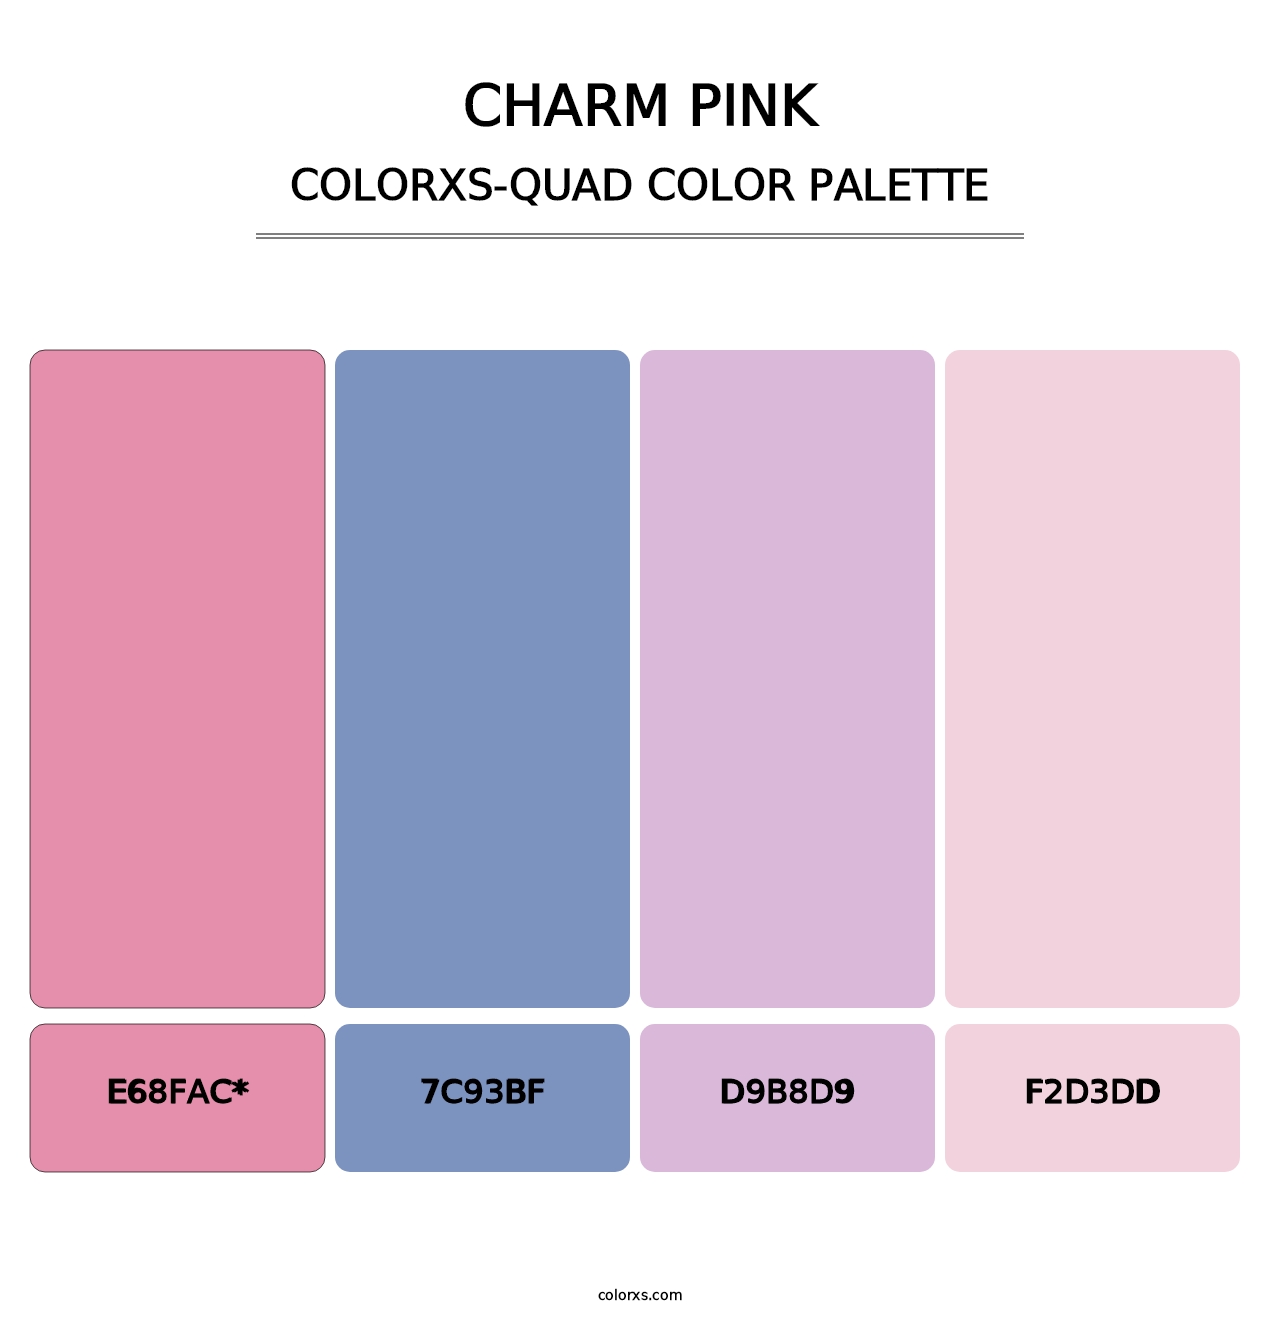 Charm Pink - Colorxs Quad Palette